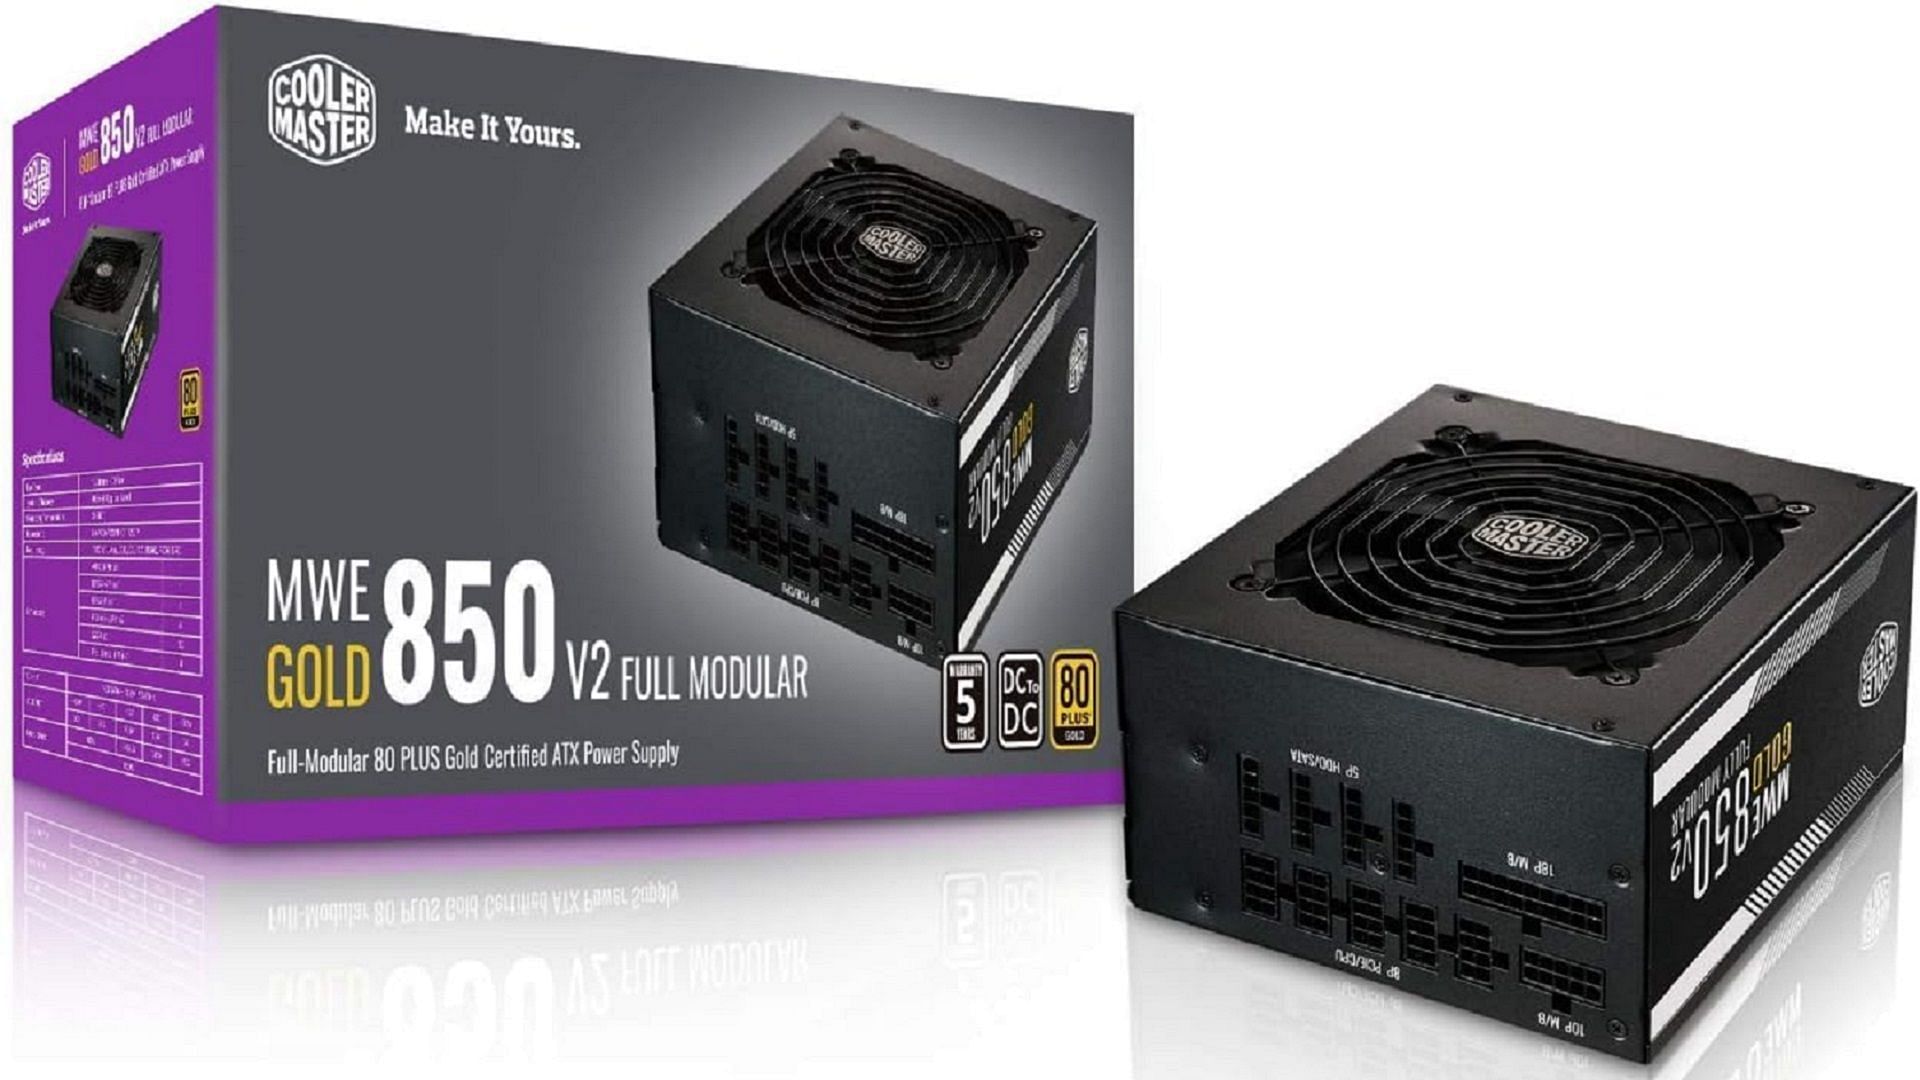 Cooler Master MWE Gold 850 V2 PSU (Image via Cooler Master/Amazon)